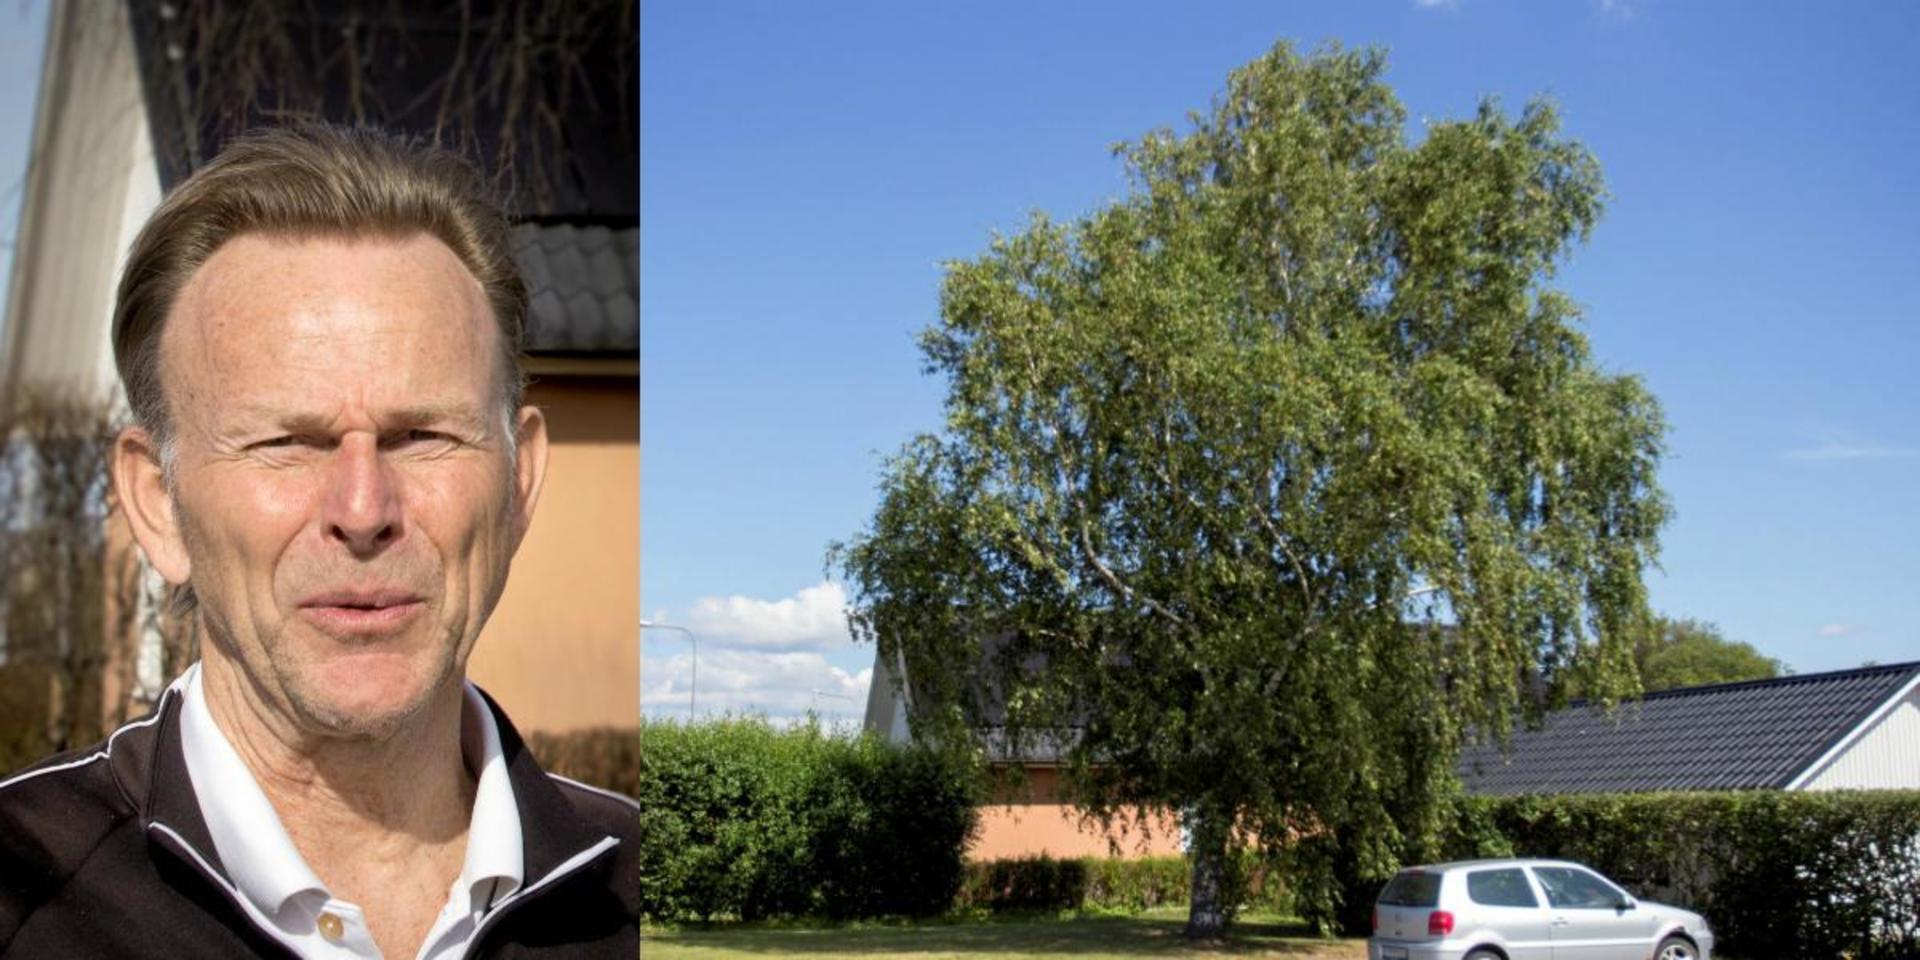 Lars Pålsson vill få bort trädet som skuggar solpanelerna på hans hus i Vallberga. Avslaget som fattades direkt av stadsträdgårdsmästaren går inte att överklaga, enligt en första dom. Nu hoppas villaägaren på en ny prövning i högre instans.